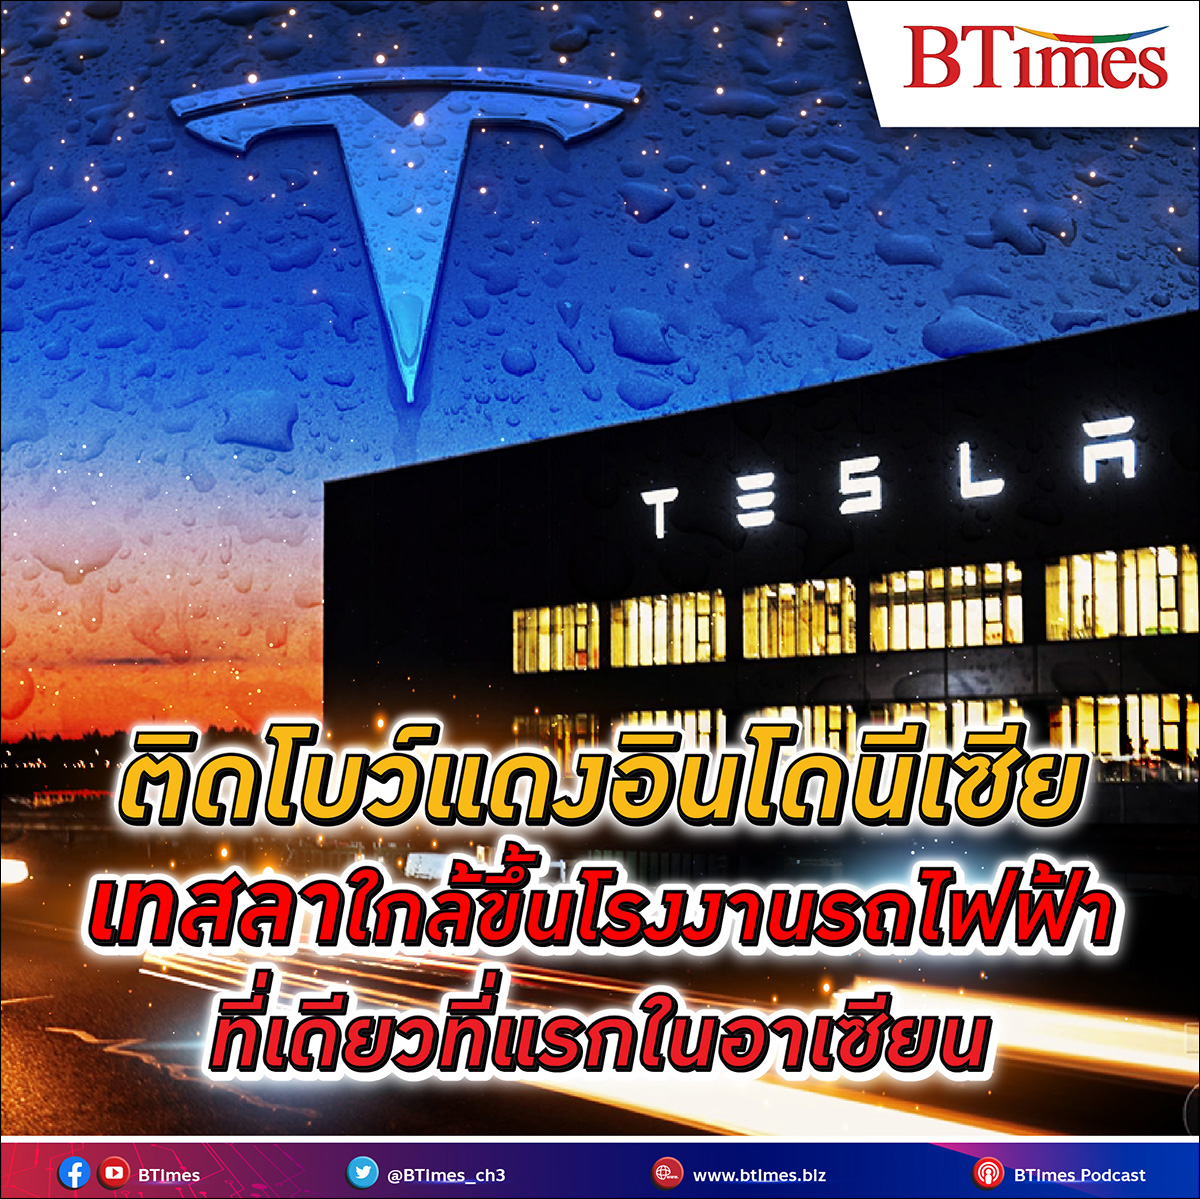 อาเซียนใกล้จะได้ตั้งโรงงานผลิตรถไฟฟ้ากิ๊กกะแฟคทอรีที่แรกและที่เดียวซะด้วย เสียดายที่ไม่ใช่เมืองไทย ทำไม อินโดนีเซีย ถึงอยากได้ - เทสลา